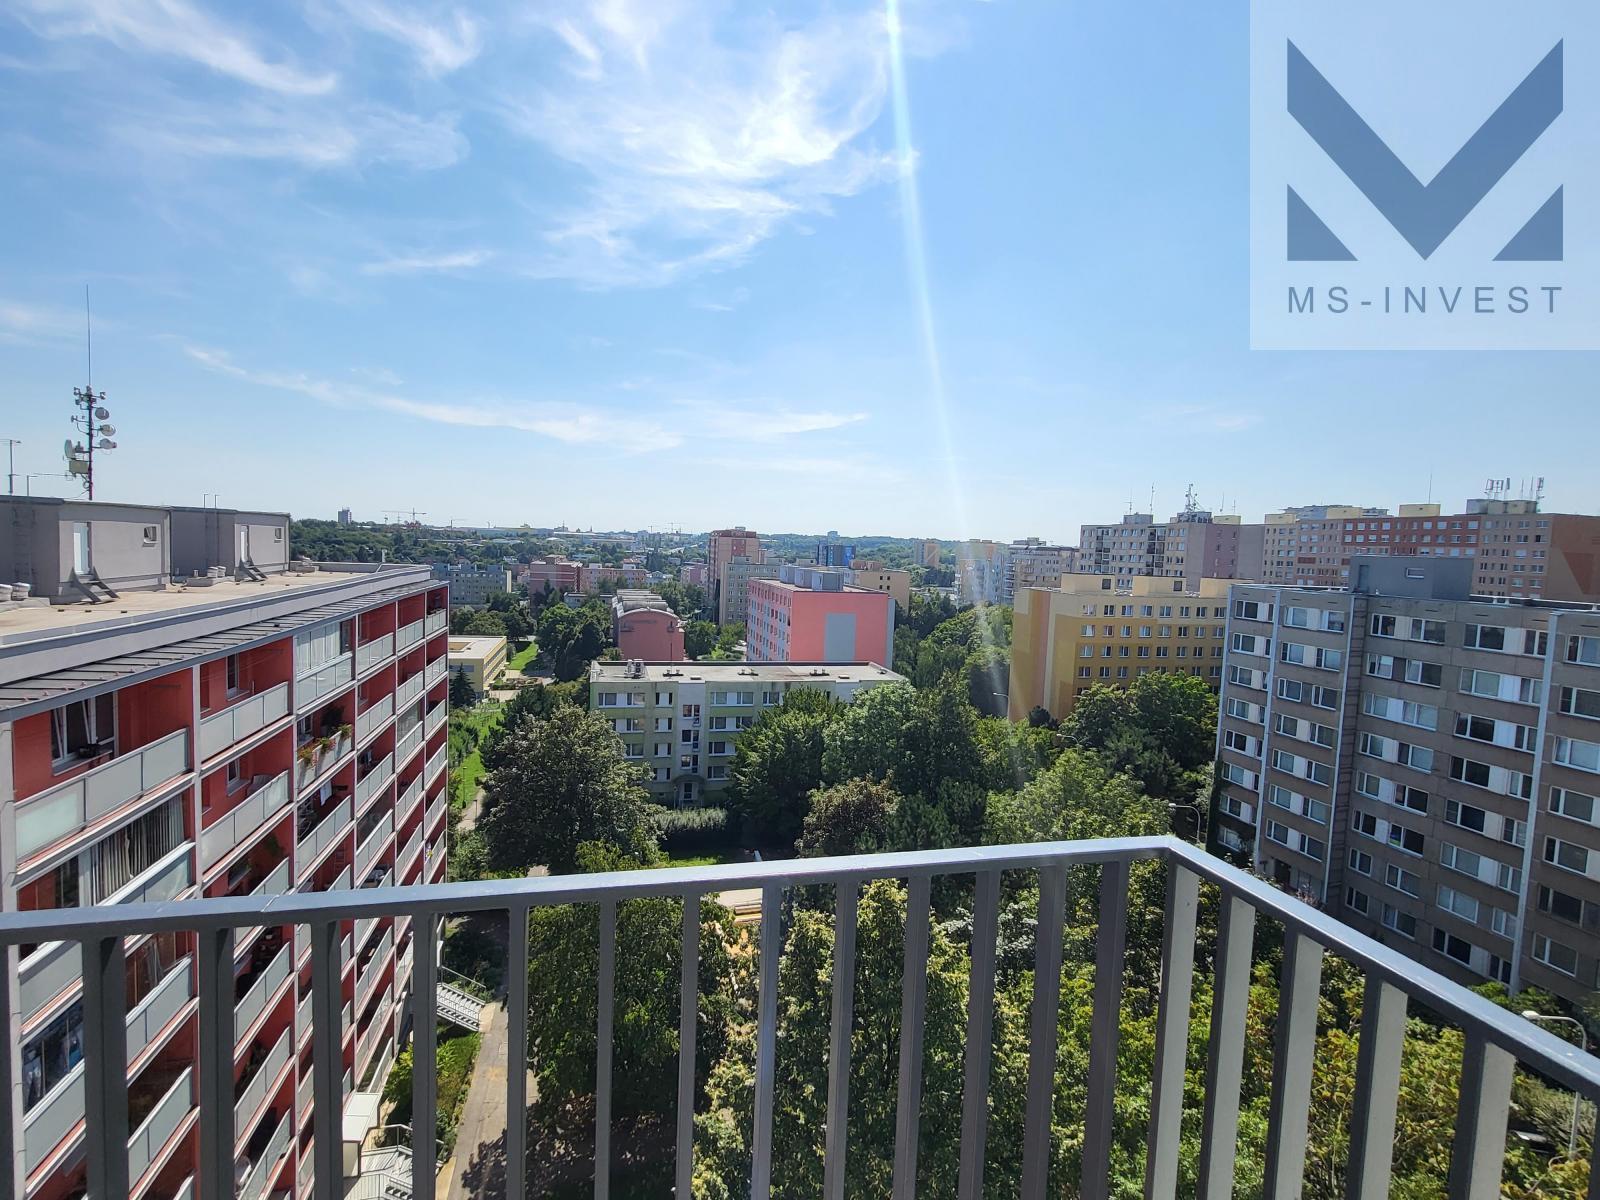 Byt 3+kk  ( 8C) 76 m2 s balkonem 5 m2 v 8. NP novostavby Praha 6  Řepy AKCE GS ZDARMA !